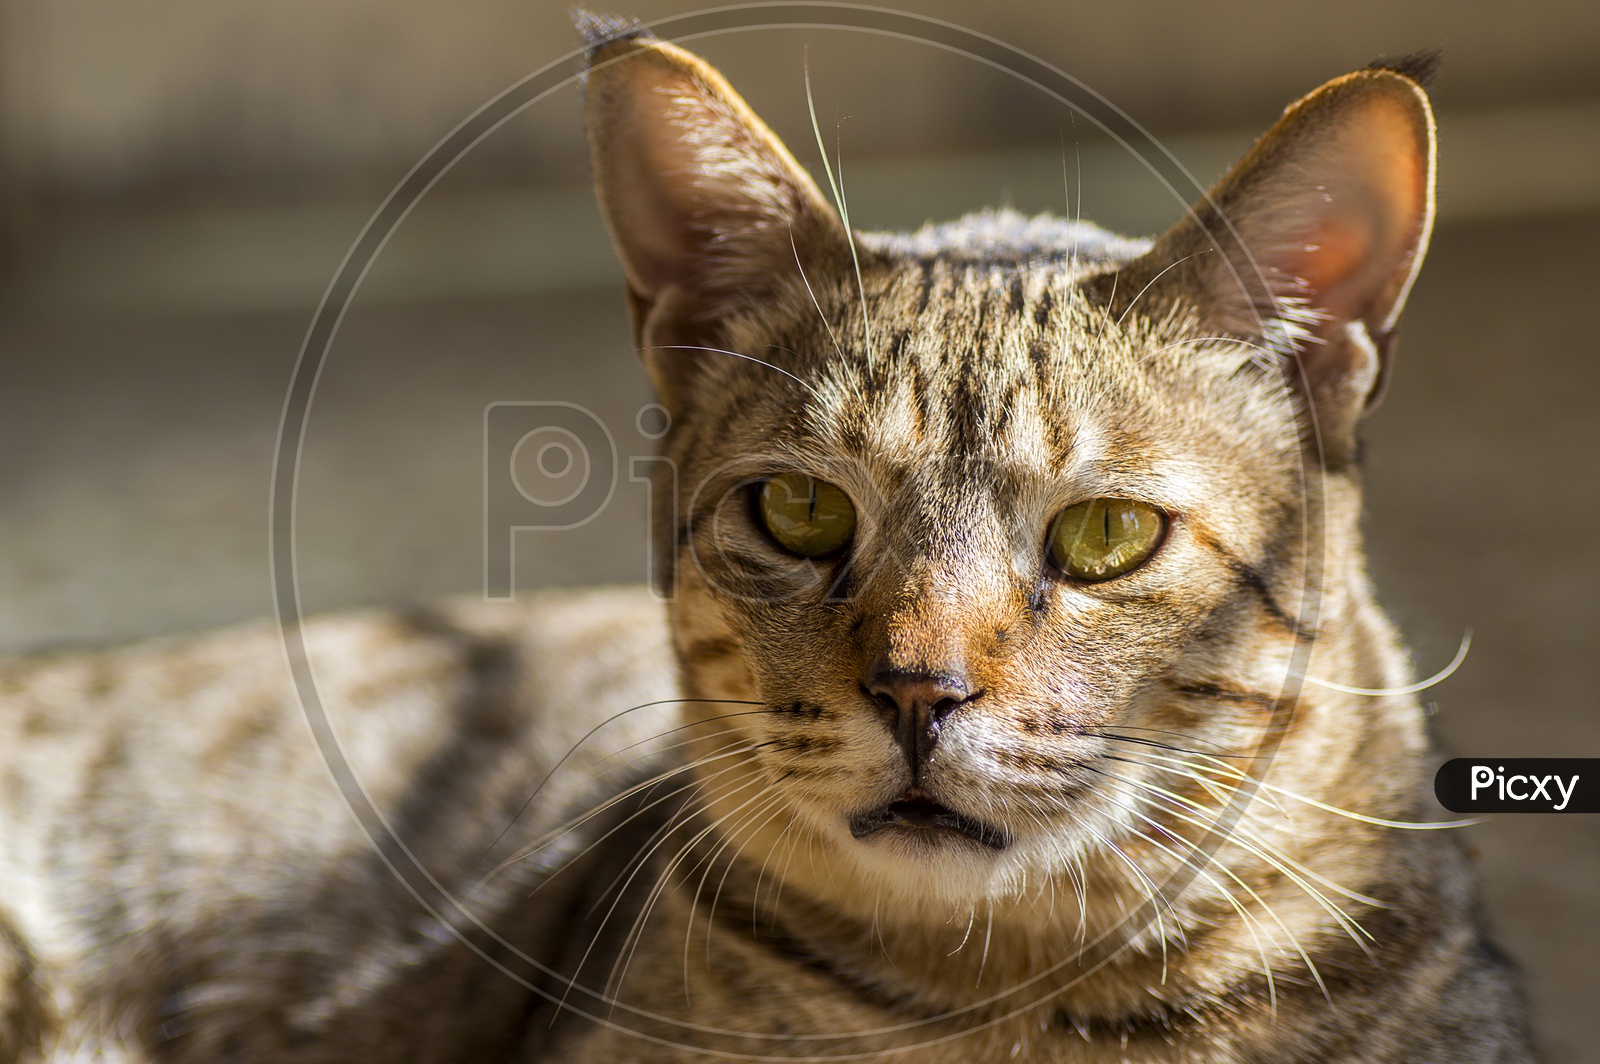 Portrait Of an Indian Pet Cat